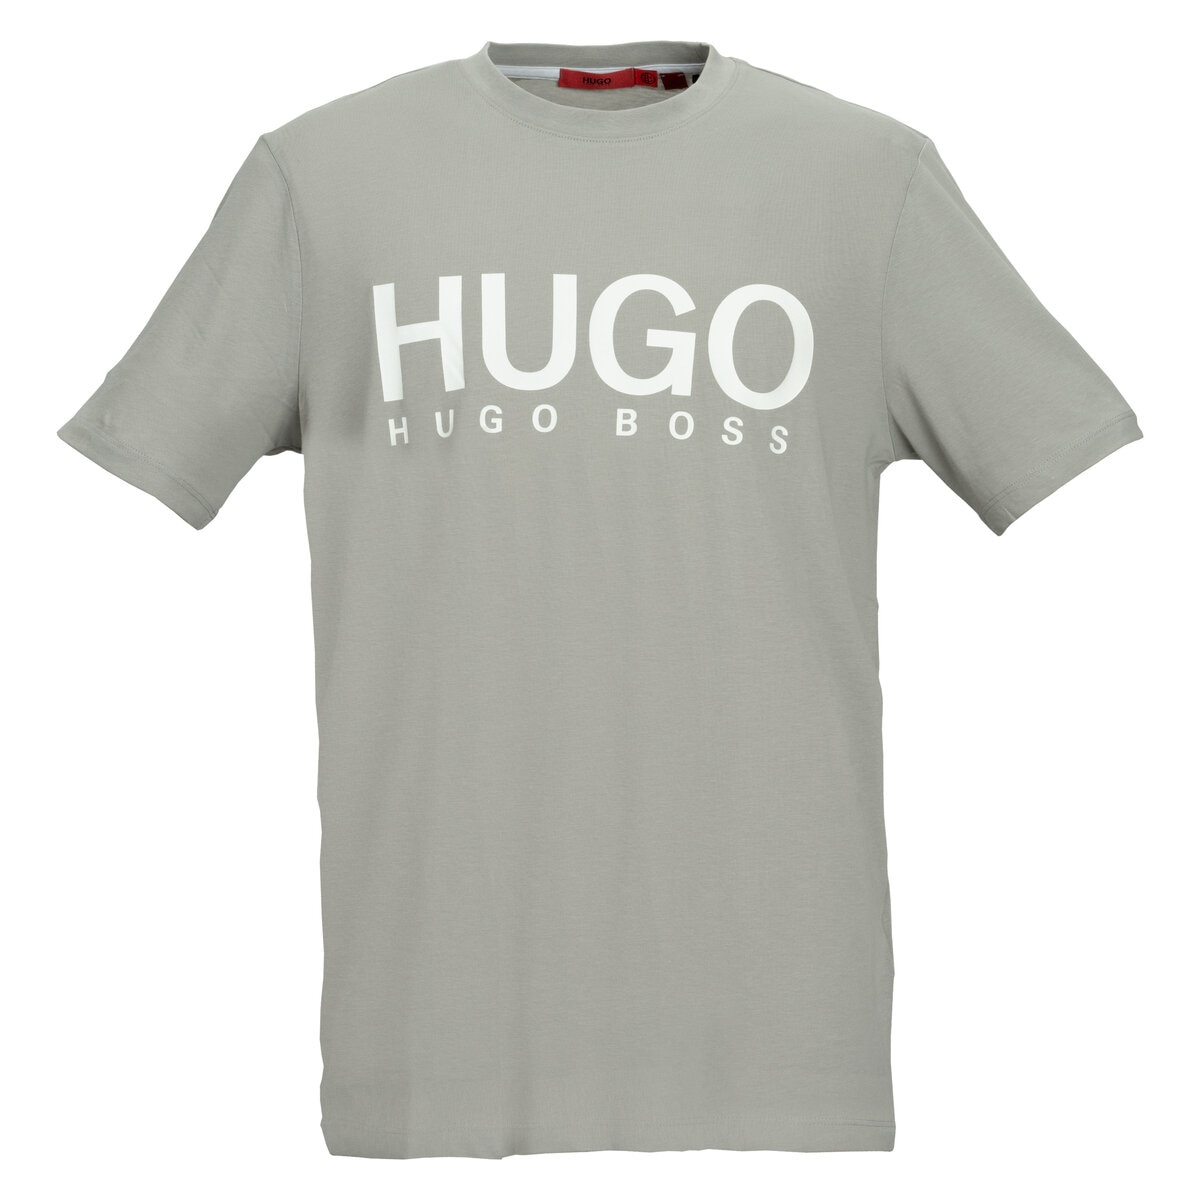 【美品】【L】HUGO BOSS♡ボス Tシャツ 3Dロゴ メンズ